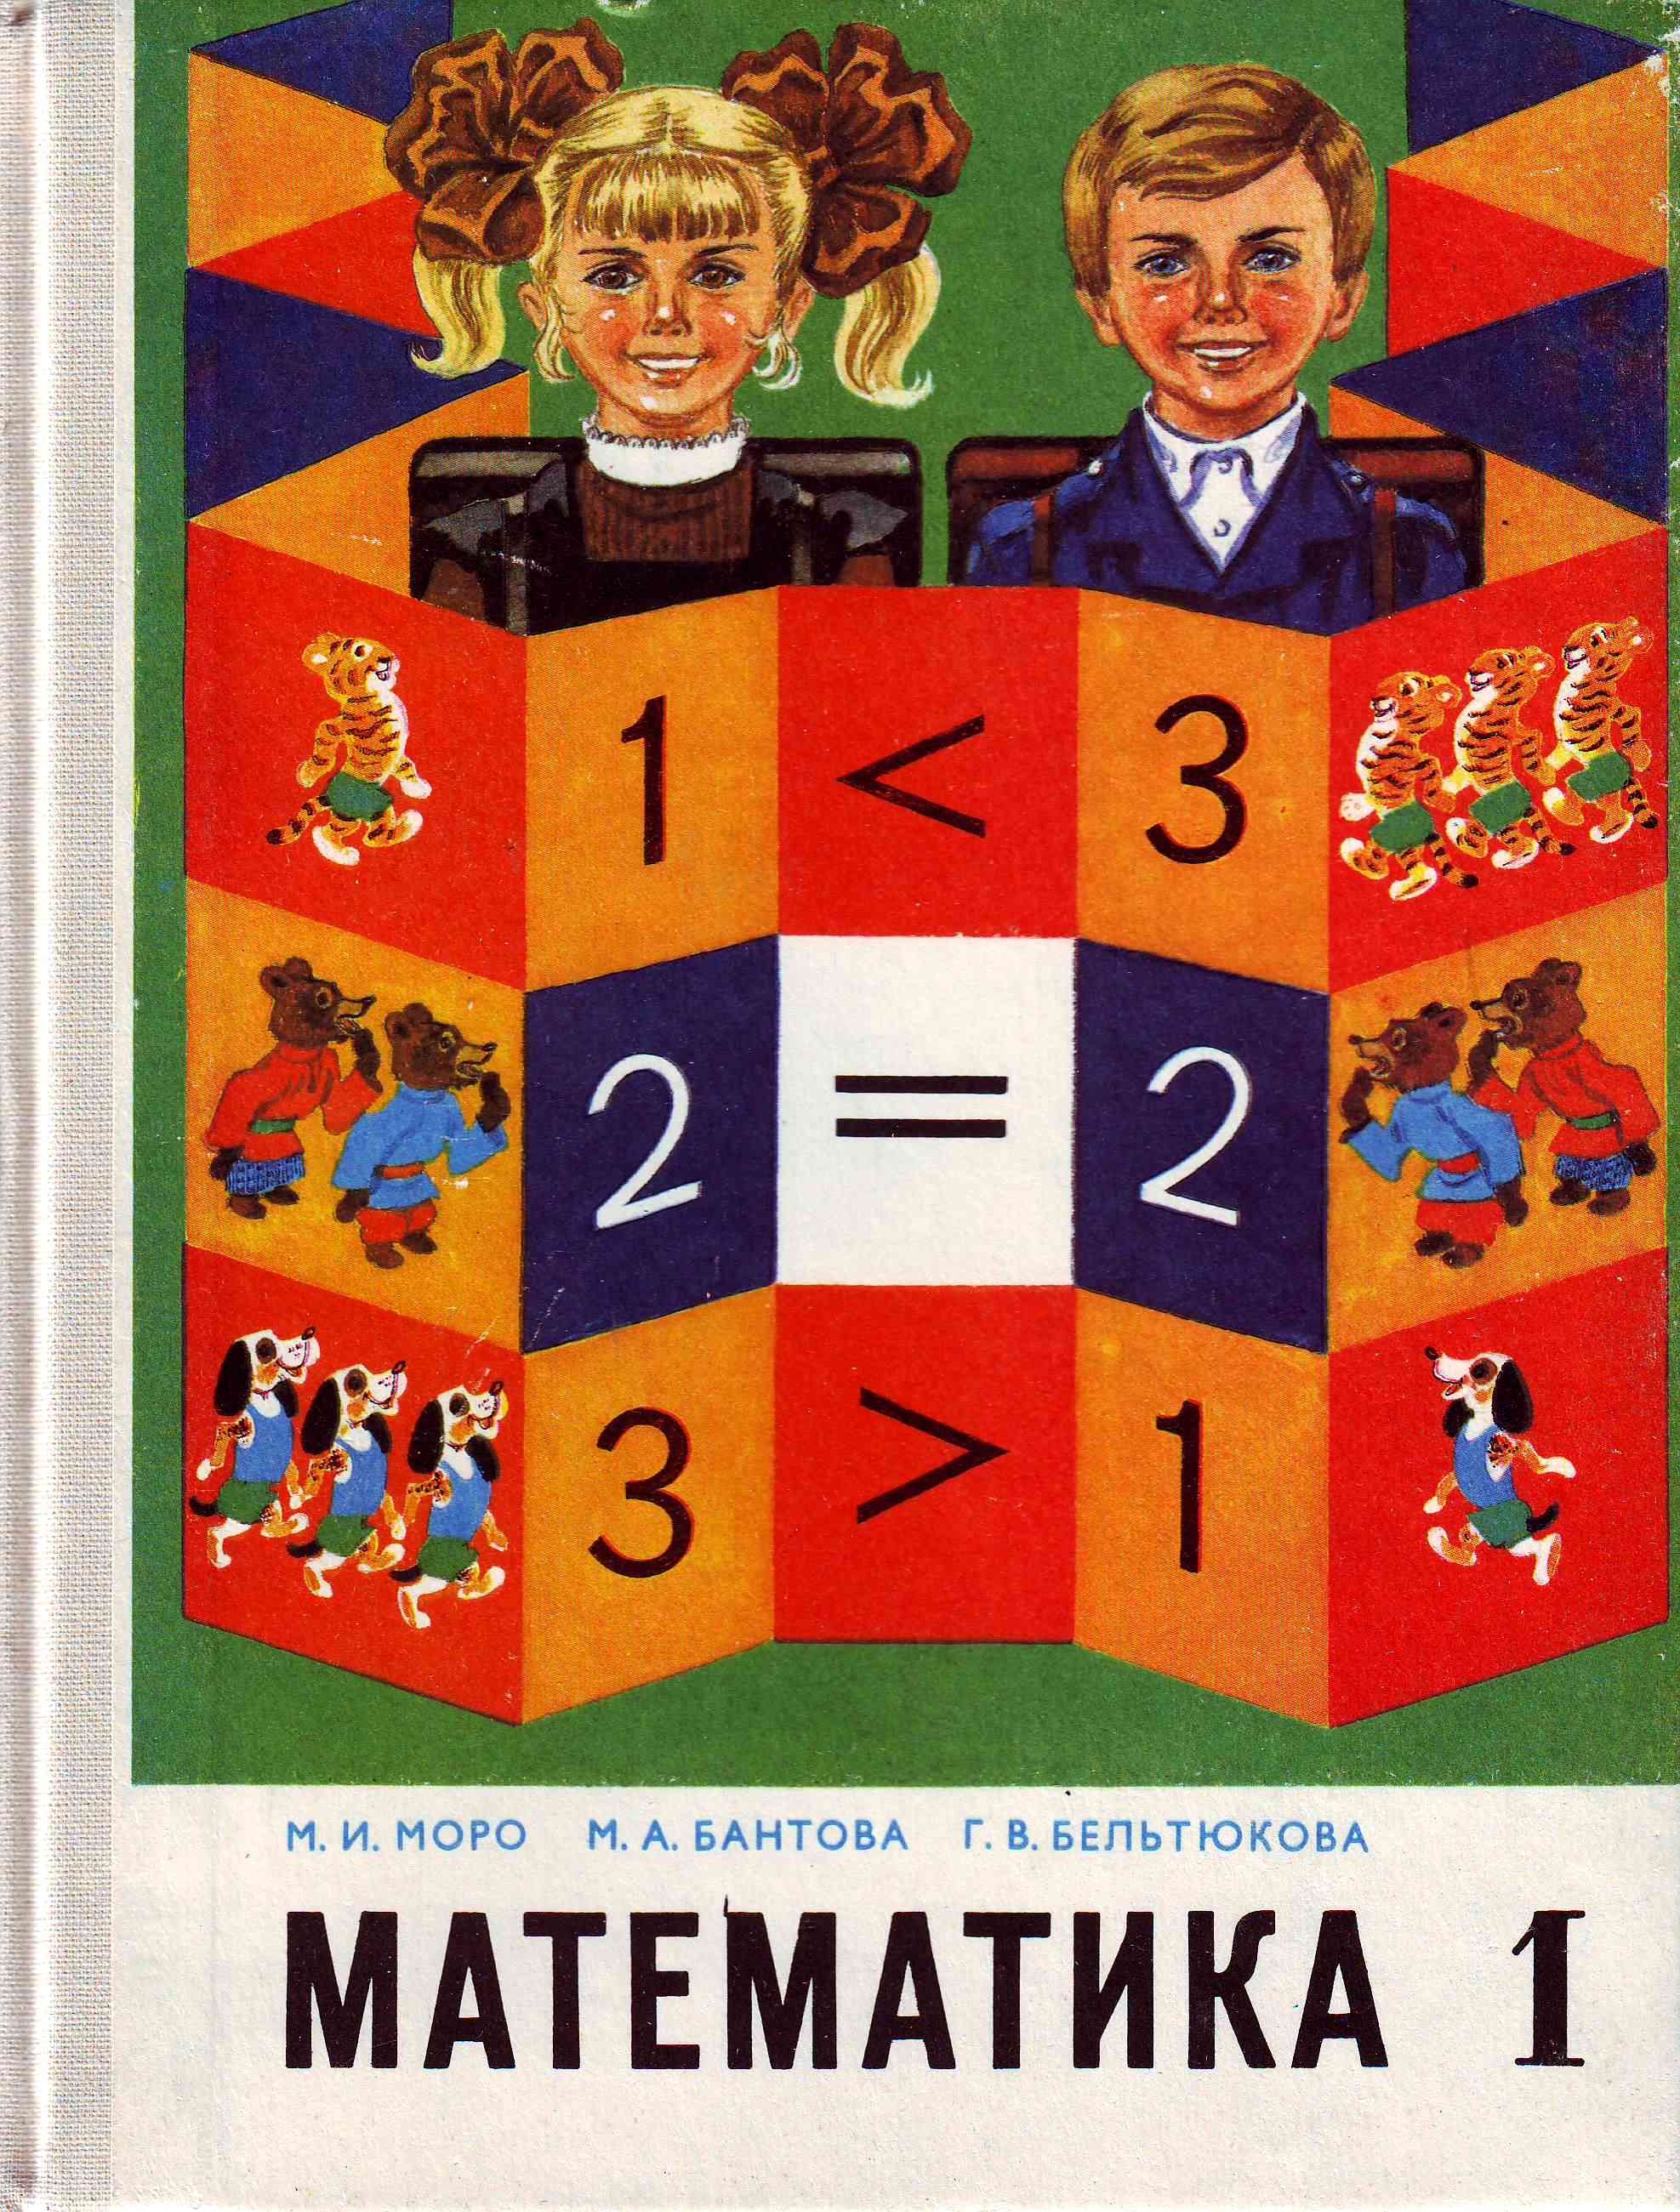 Математика 1 Советский учебник Моро. Советские книги по математике. Старые учебники по математике. Советские учебники математики.